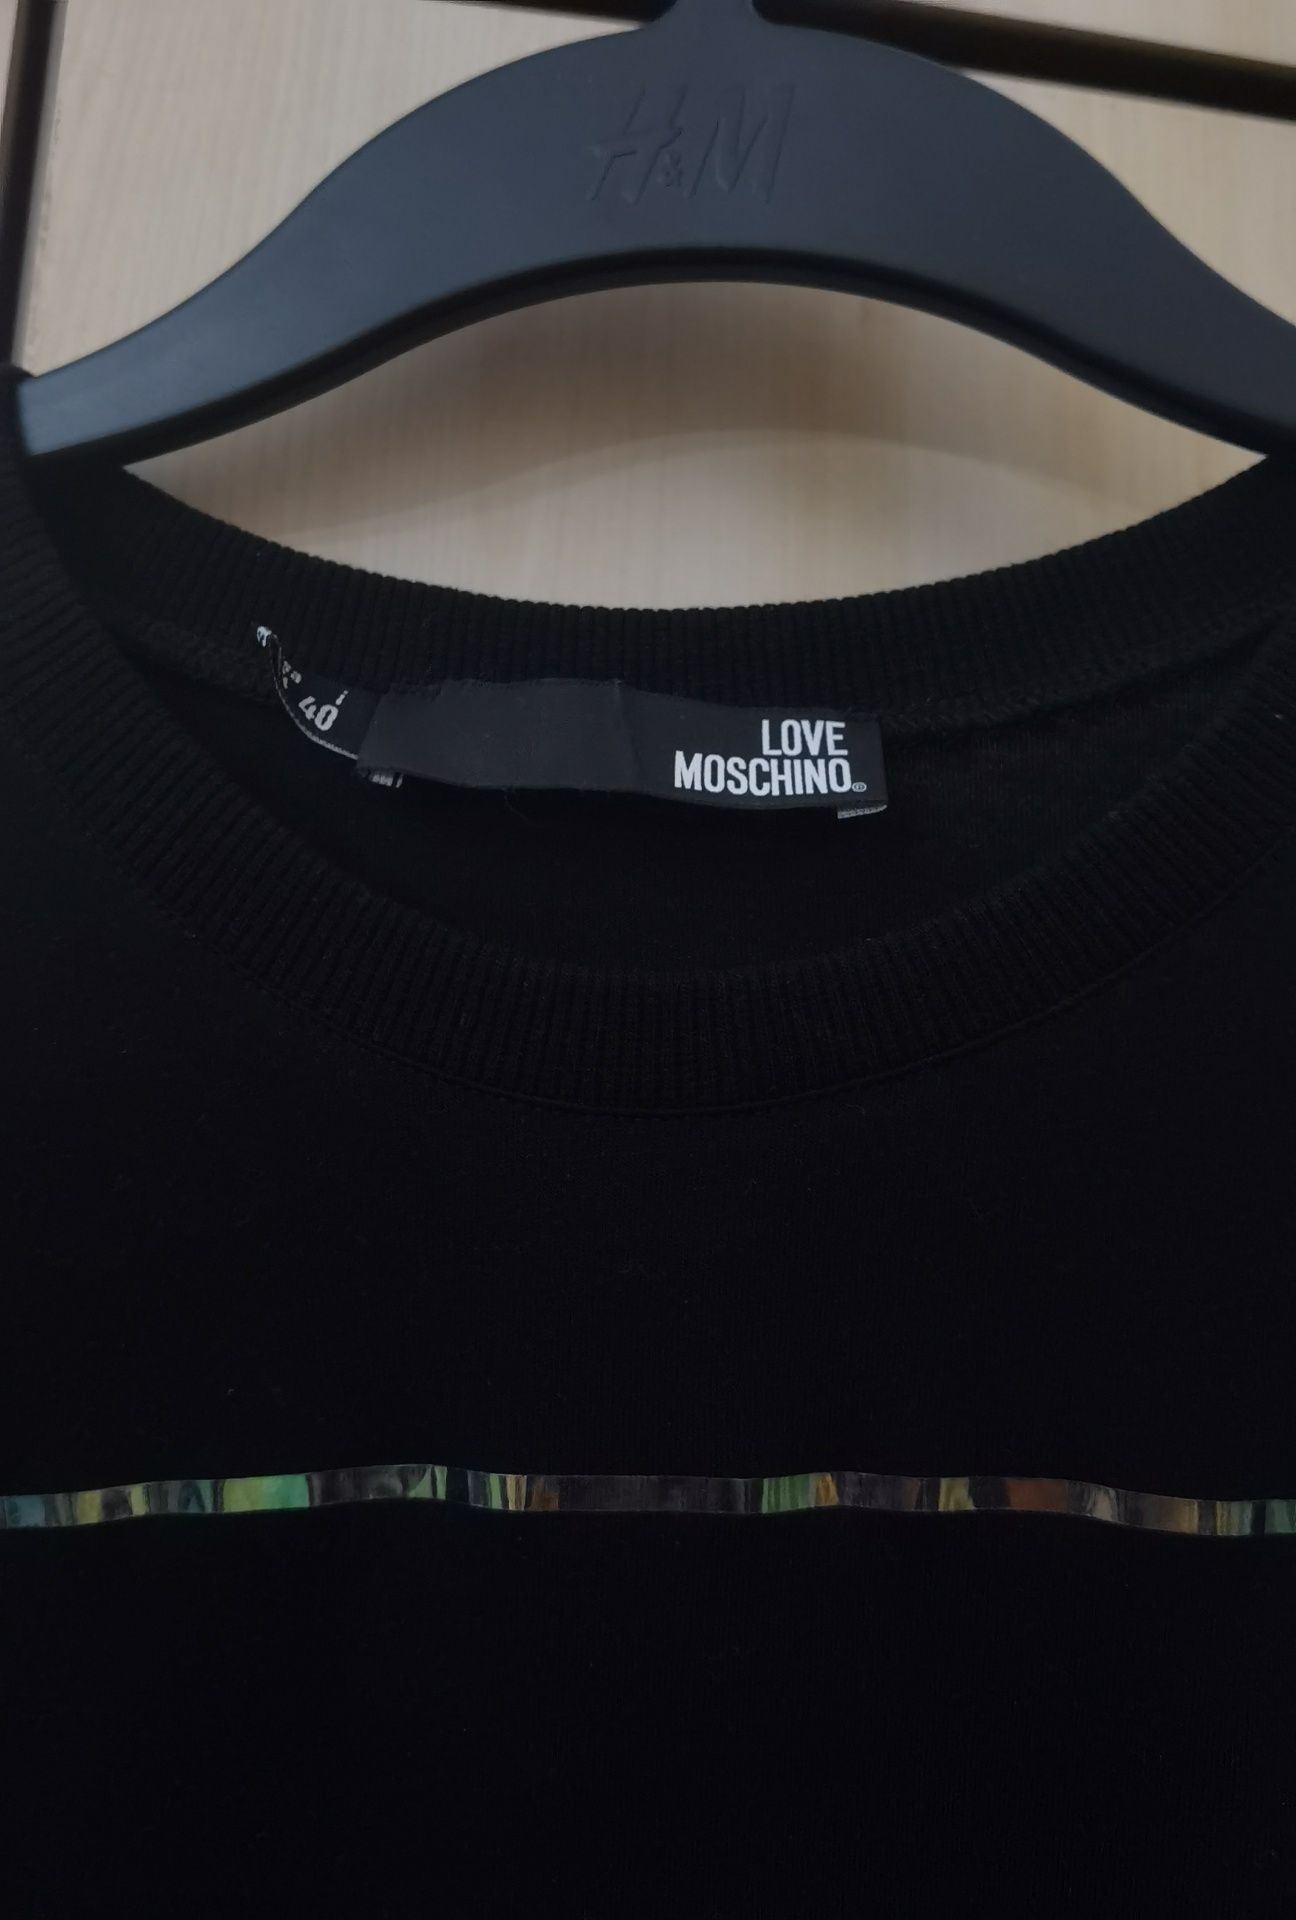 Tricou Love Moschino, negru, original, nou nout